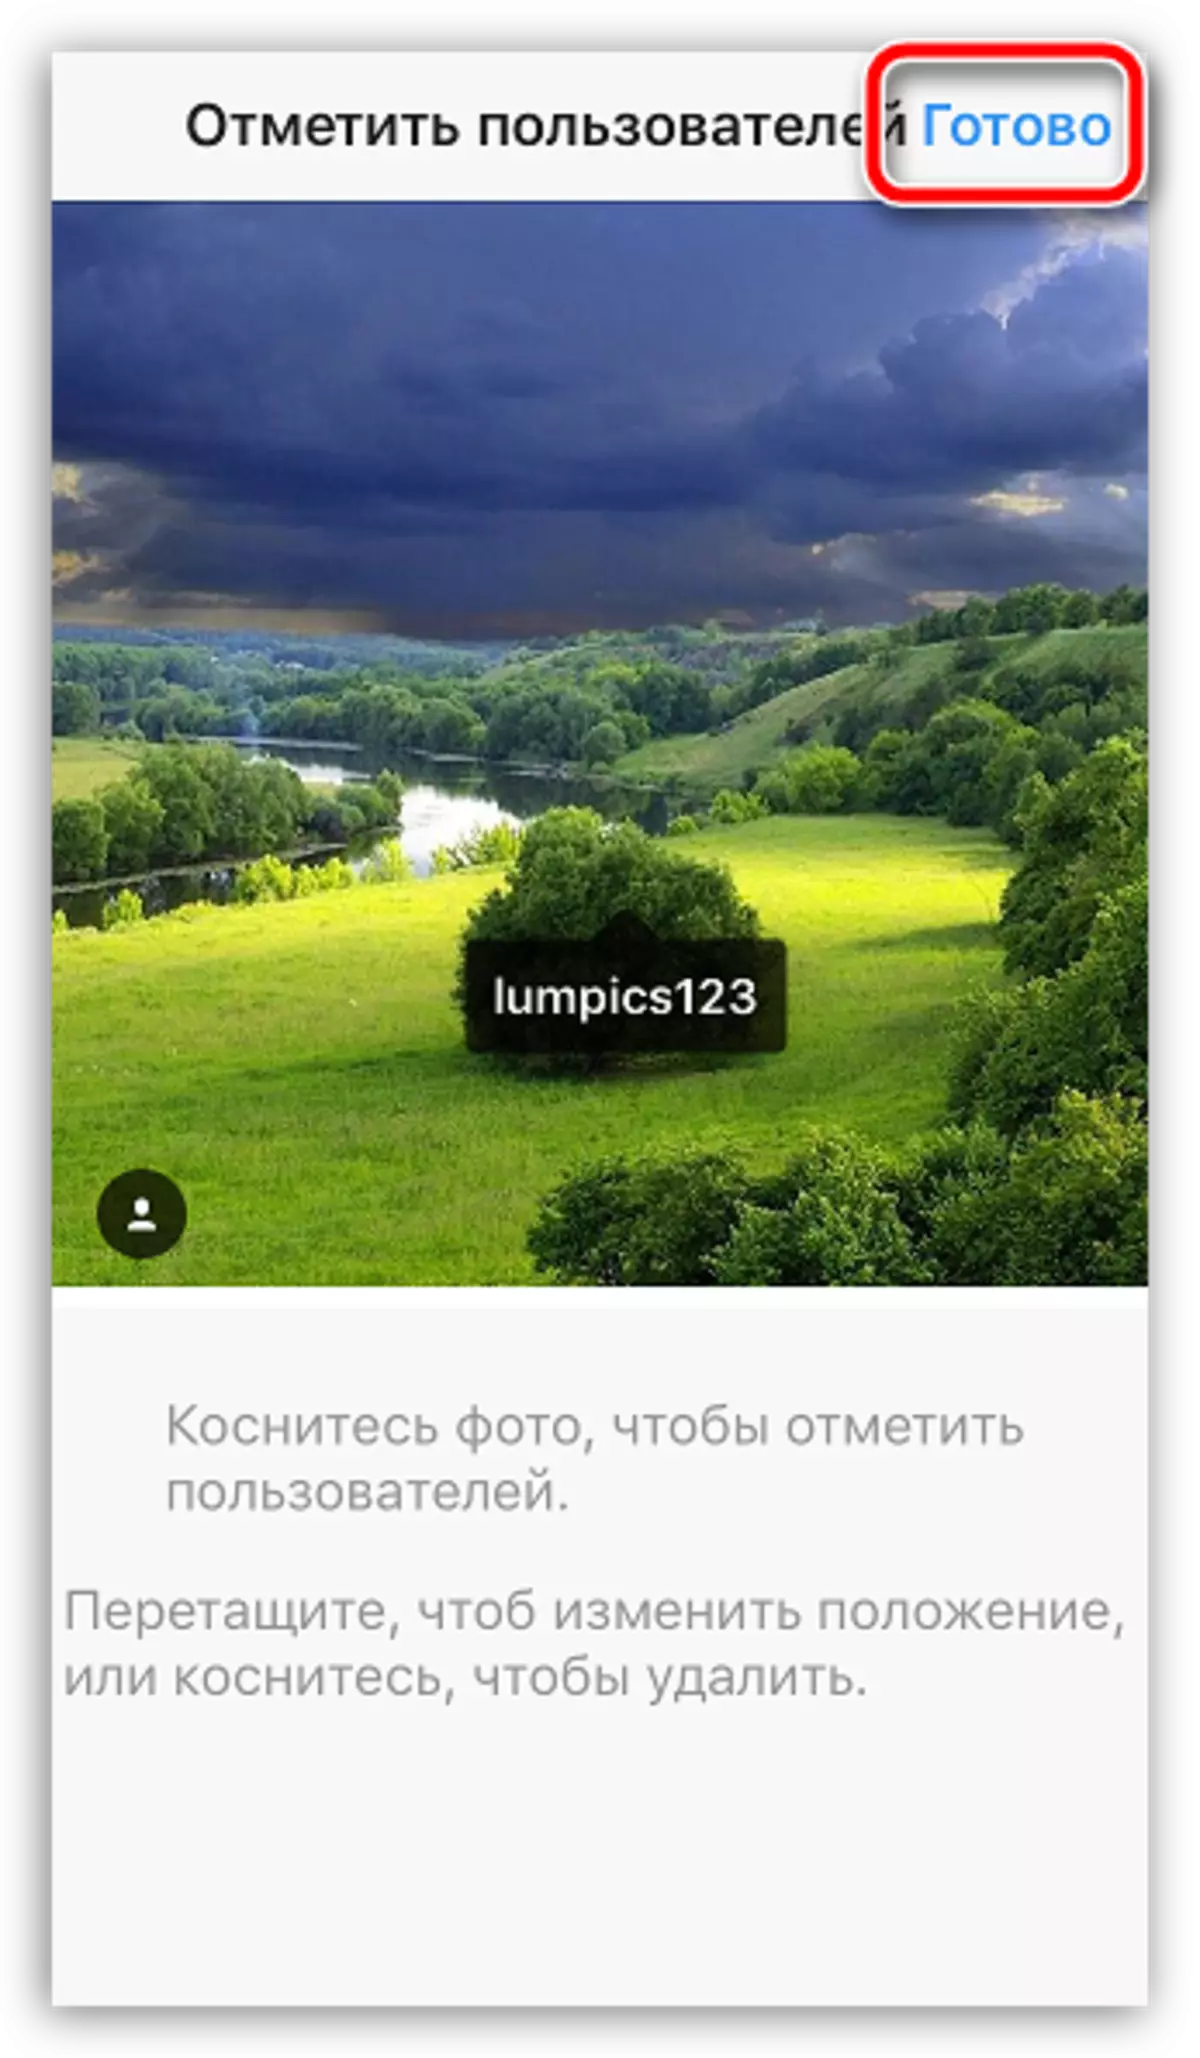 Instagram Hesabındaki Resim ve Videoları